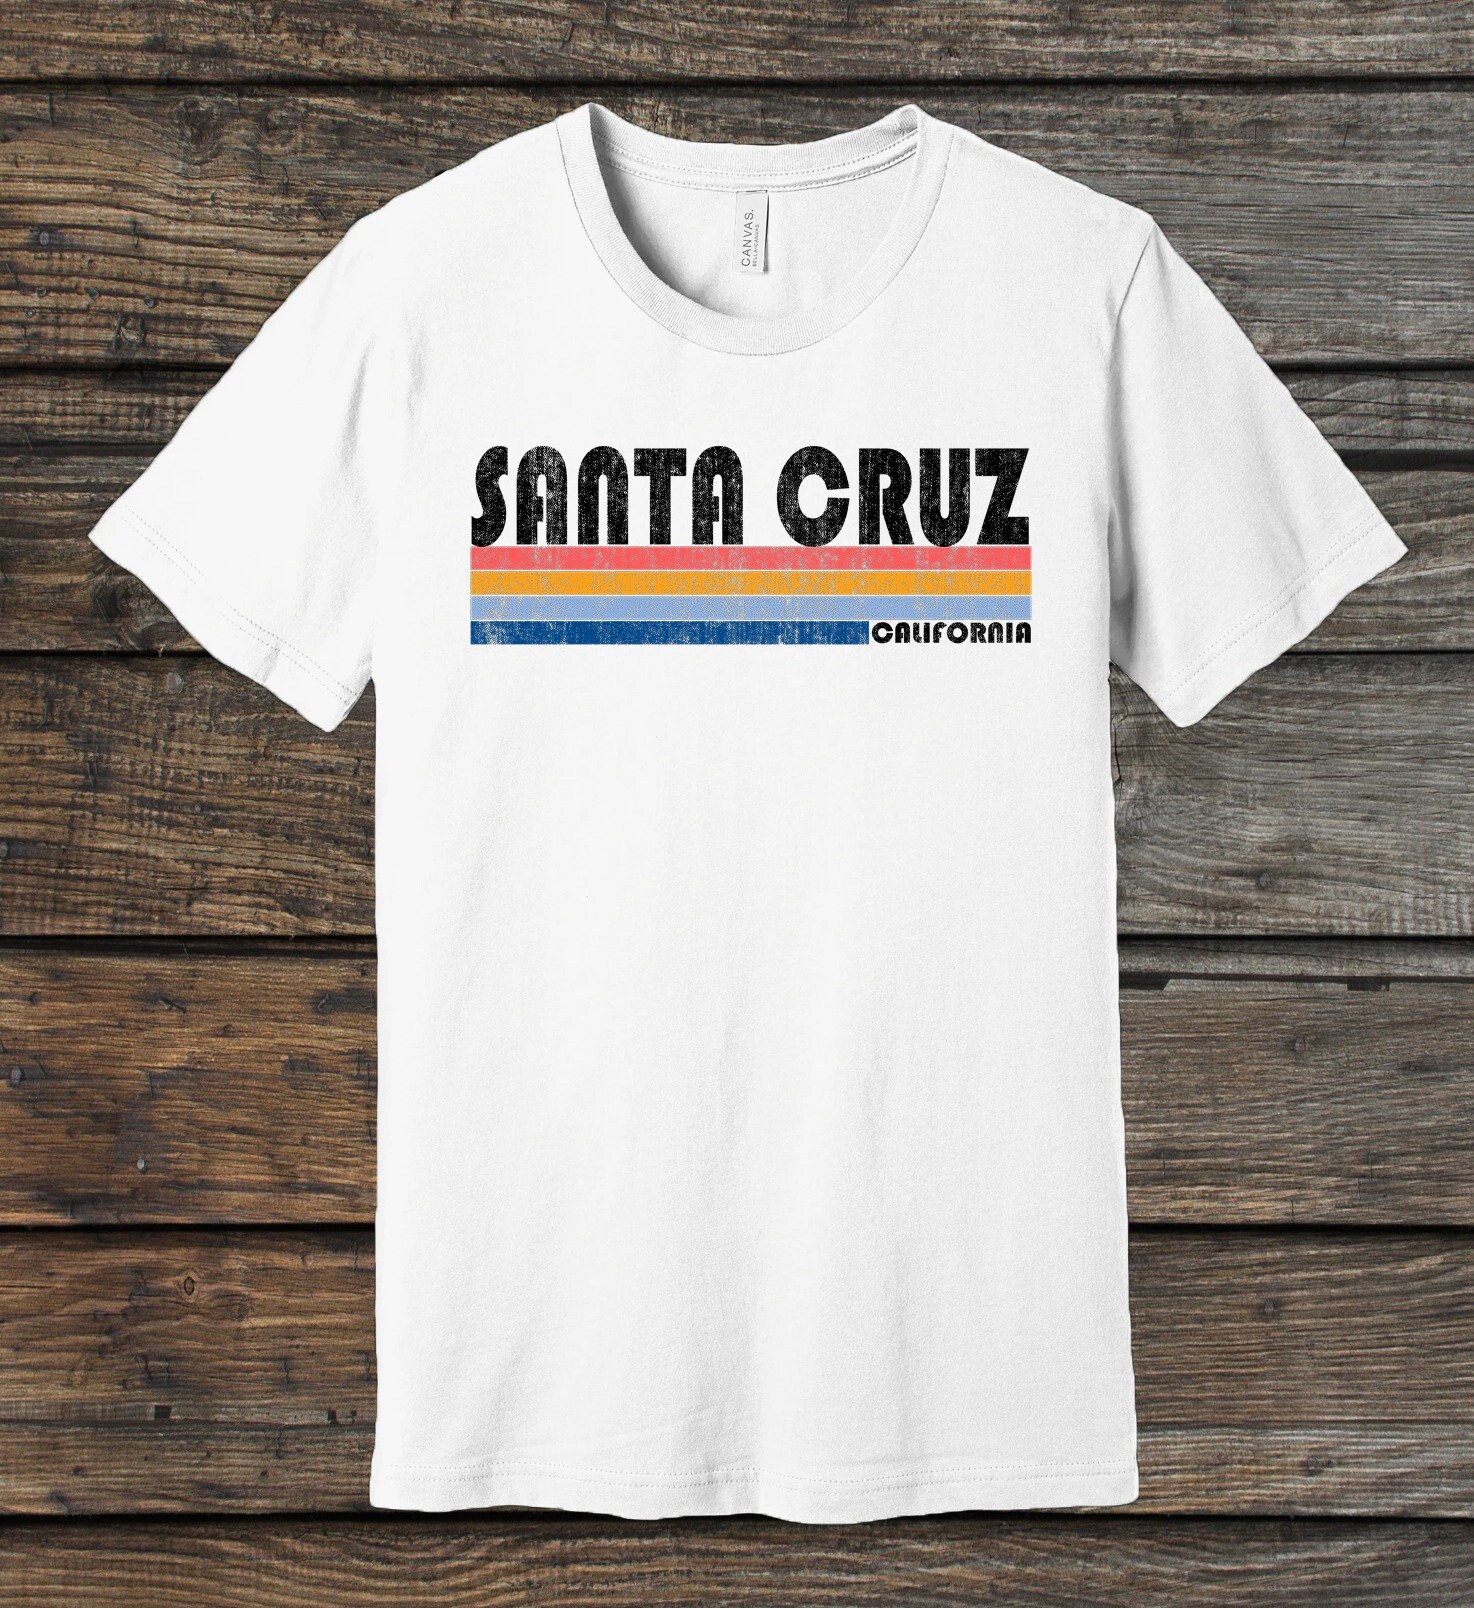 California Vintage 70s 80s Style Santa Cruz T-shirt, Santa Cruz Ca Shirt